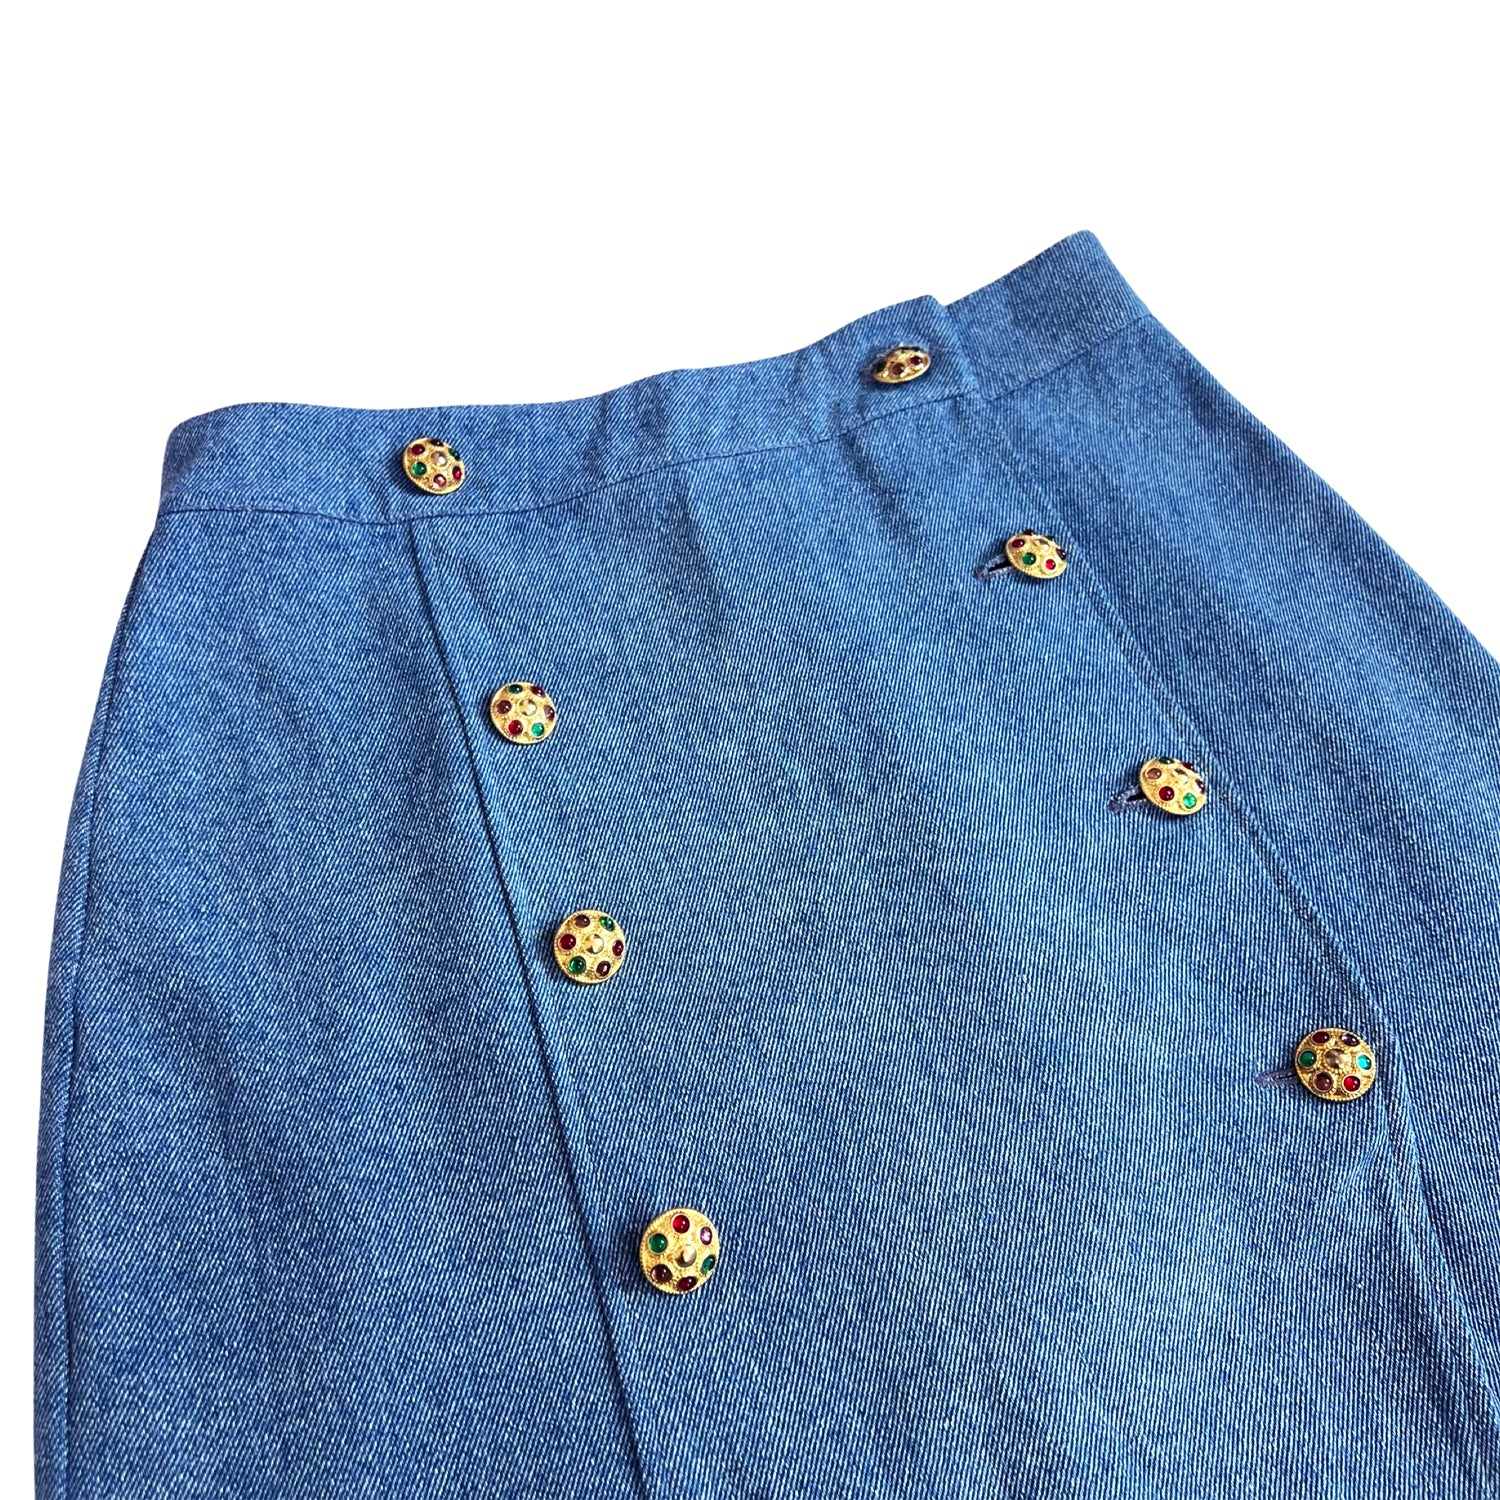 Majorelle Midi Skirt in Blue Denim